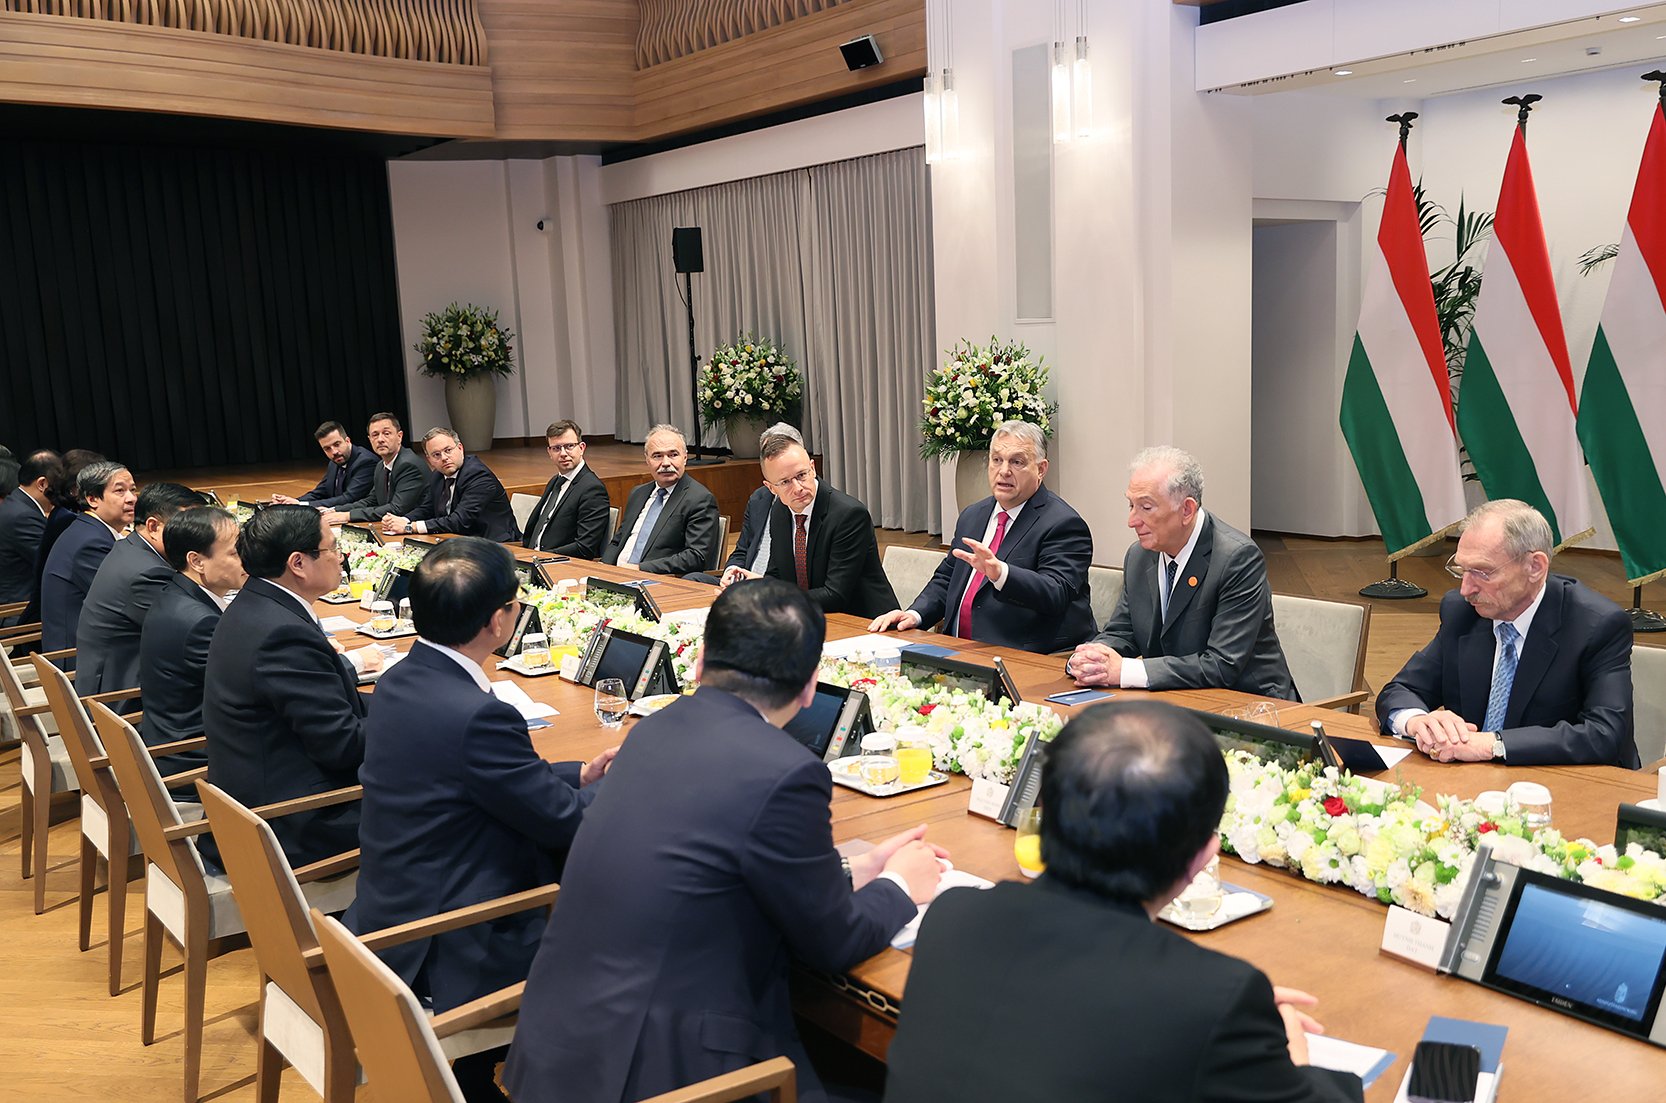 Thủ tướng Hungary khẳng định, Việt Nam luôn là đối tác quan trọng hàng đầu của Hungary tại Đông Nam Á và tin tưởng chuyến thăm sẽ góp phần đưa quan hệ song phương đi vào chiều sâu, thiết thực, hiệu quả - Ảnh: VGP/Nhật Bắc